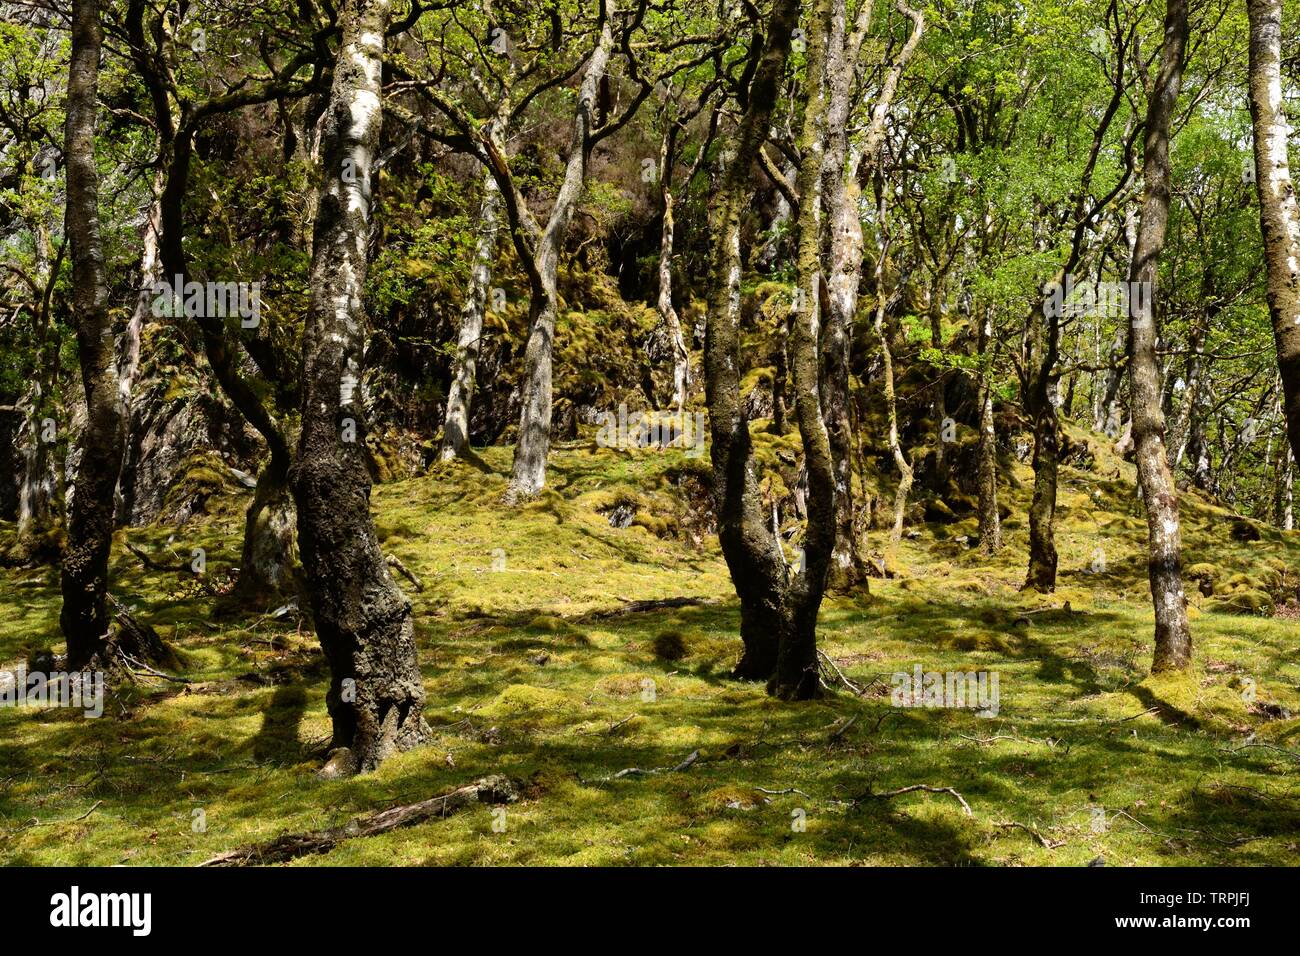 Chêne et bois d'aulne de la réserve RSPB Gwenffrwd-Dinas Elenydd Ystradffin Zone Spéciale de Conservation Carmarthenshire Carmarthen Wales Cymru UK Banque D'Images